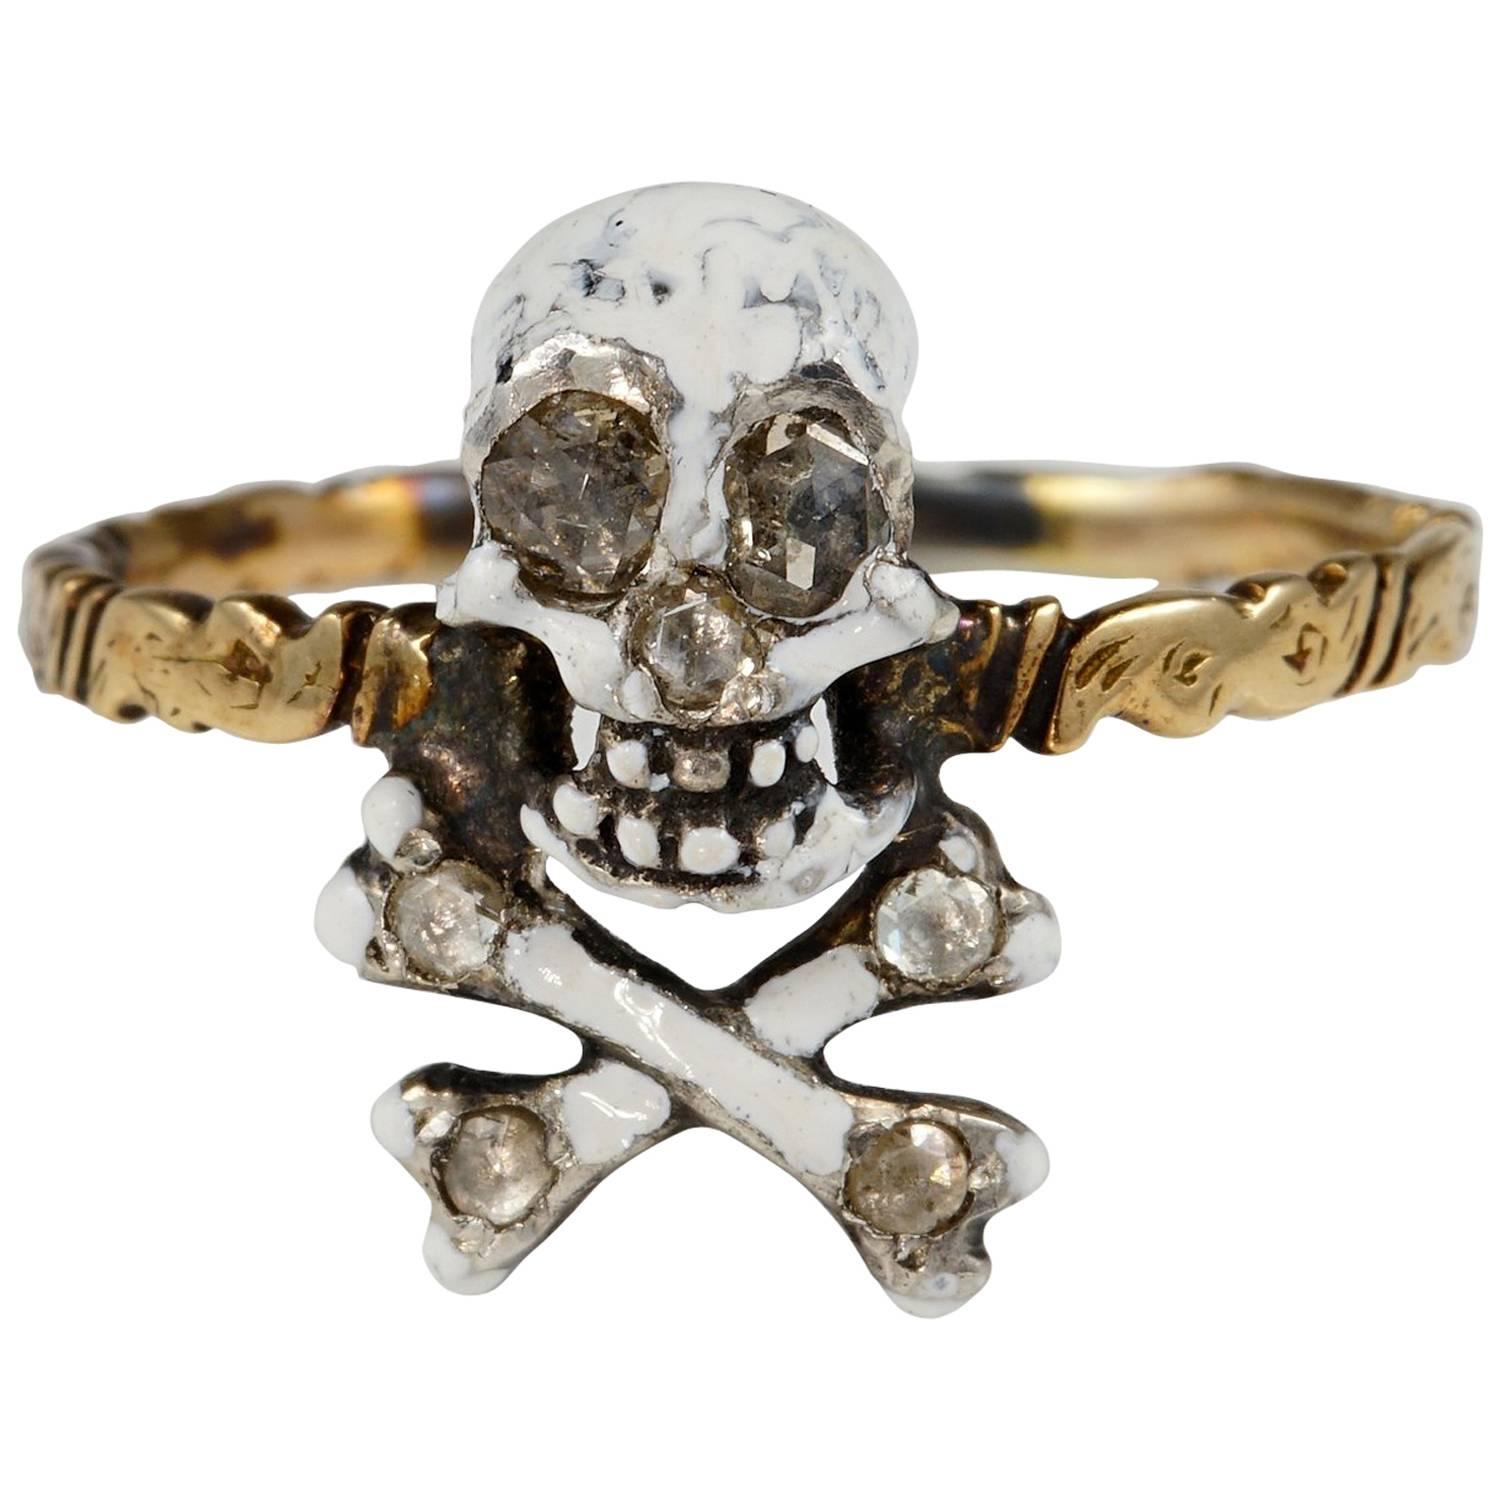 Antique Skull and Bones Diamond Memento Mori Ring